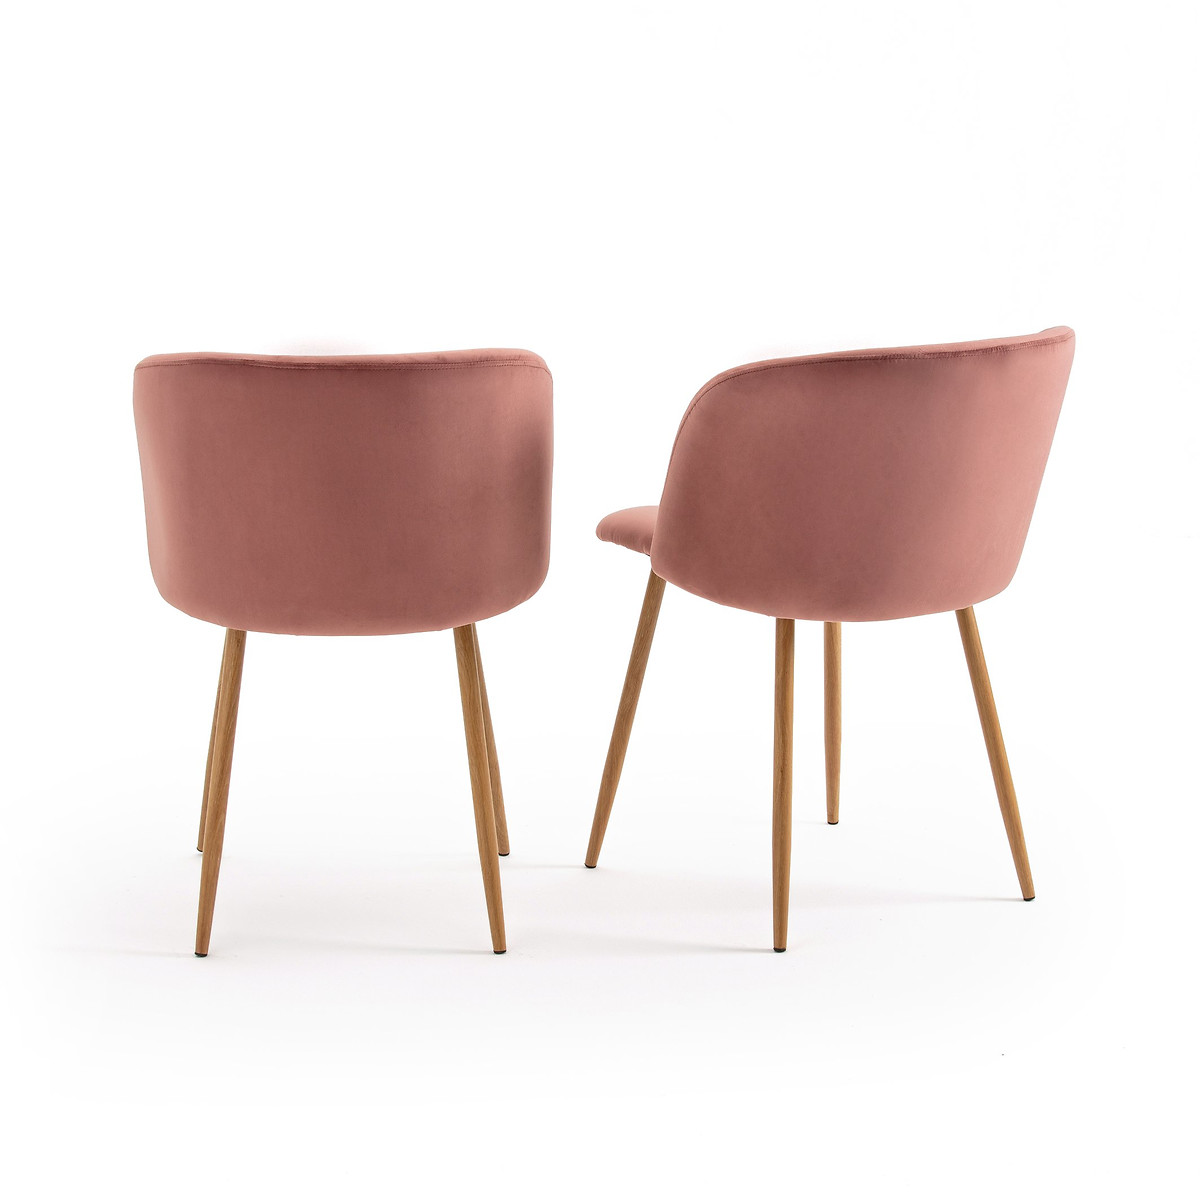 Комплект из  столовых кресел La Redoute Lavergne единый размер розовый - фото 2